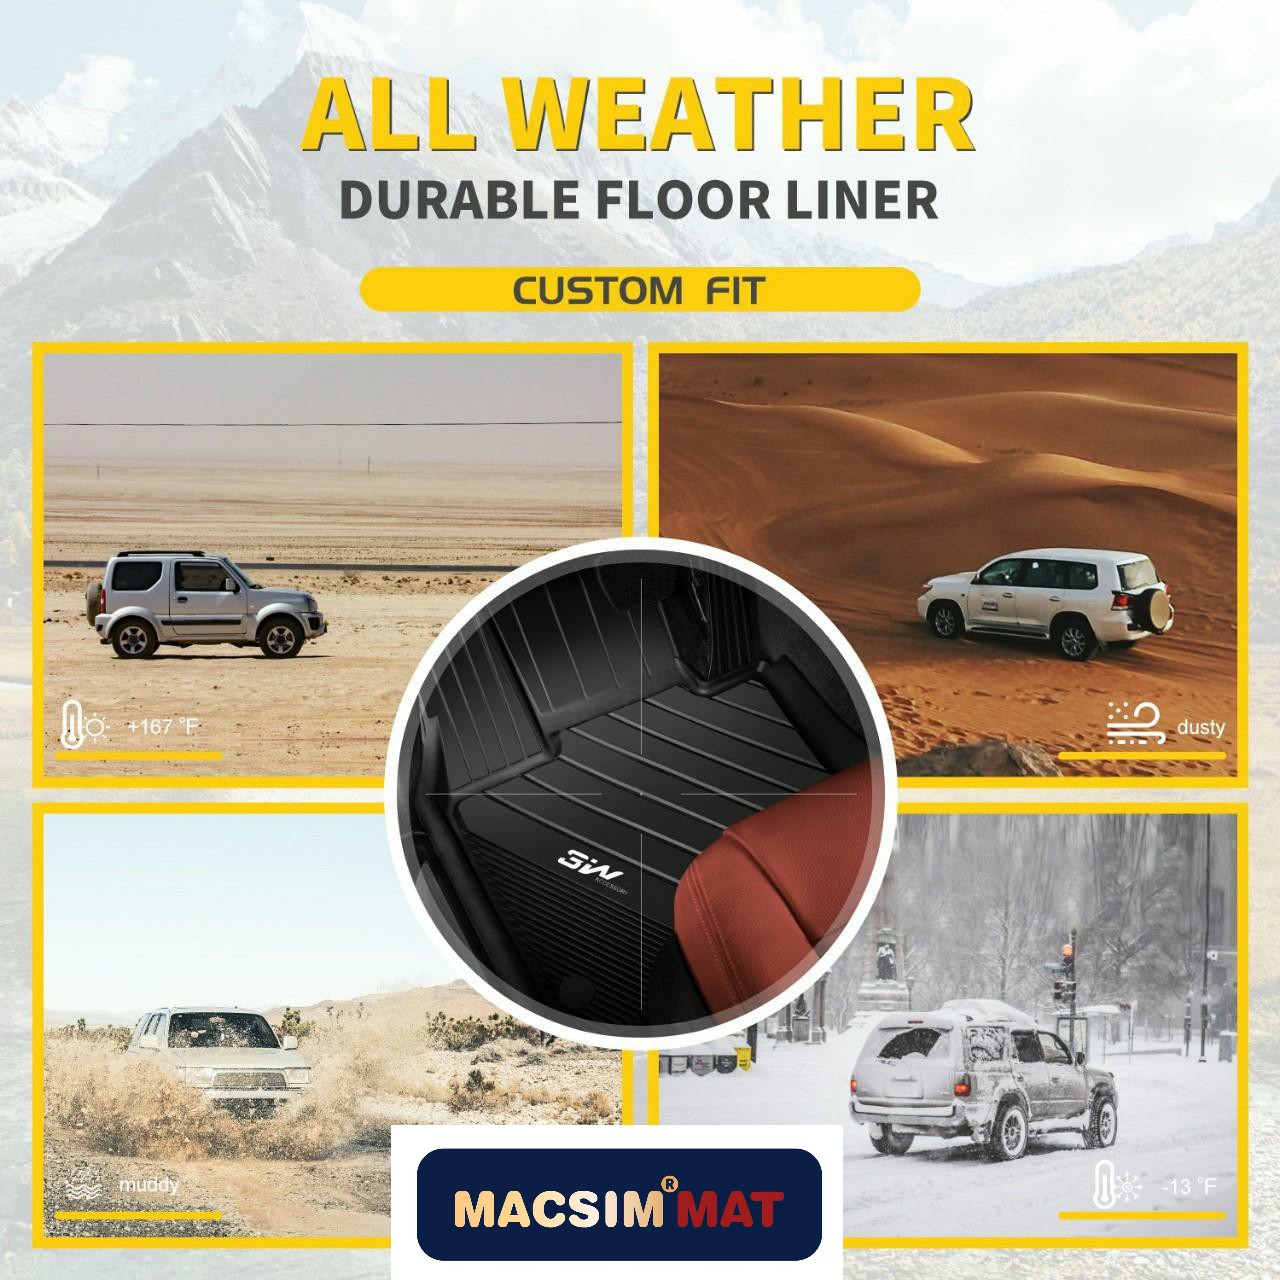 Thảm lót sàn xe ô tô dành cho BMW X3 2010 - 2018  Nhãn hiệu Macsim 3W chất liệu nhựa TPE đúc khuôn cao cấp - màu đen